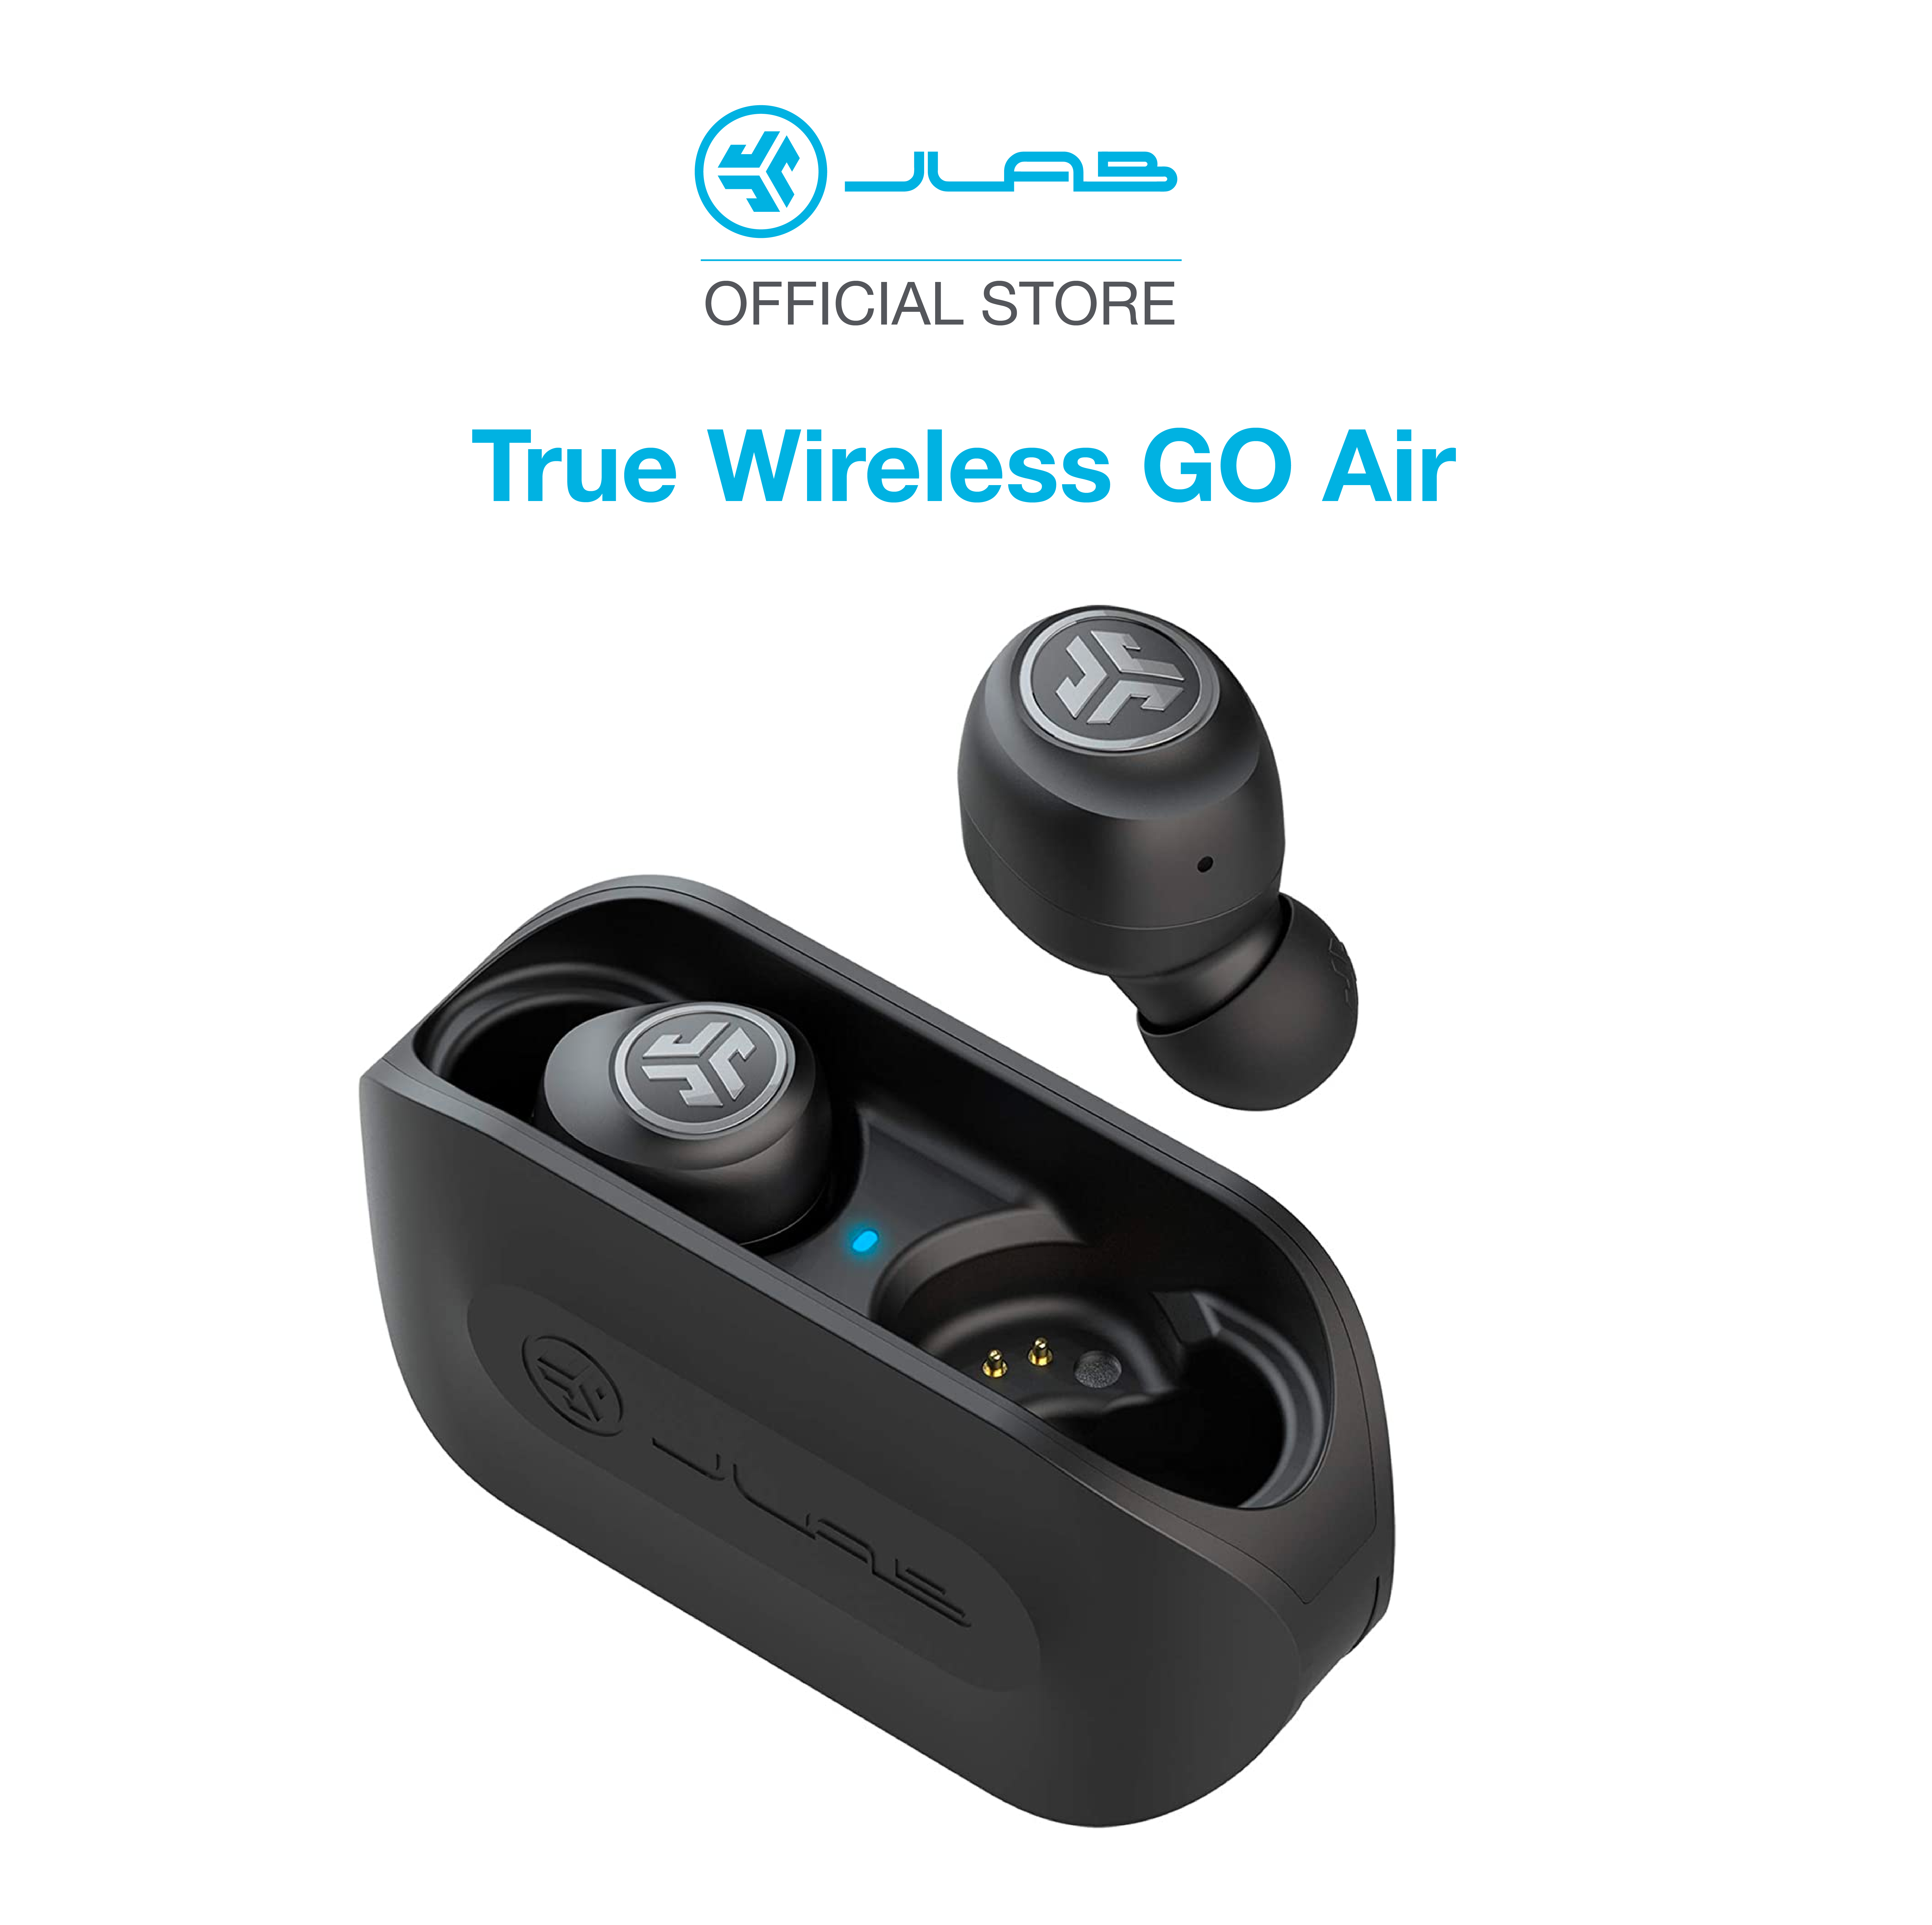 Tai nghe Bluetooth True Wireless JLab GO Air màu đen - Hành chính hãng